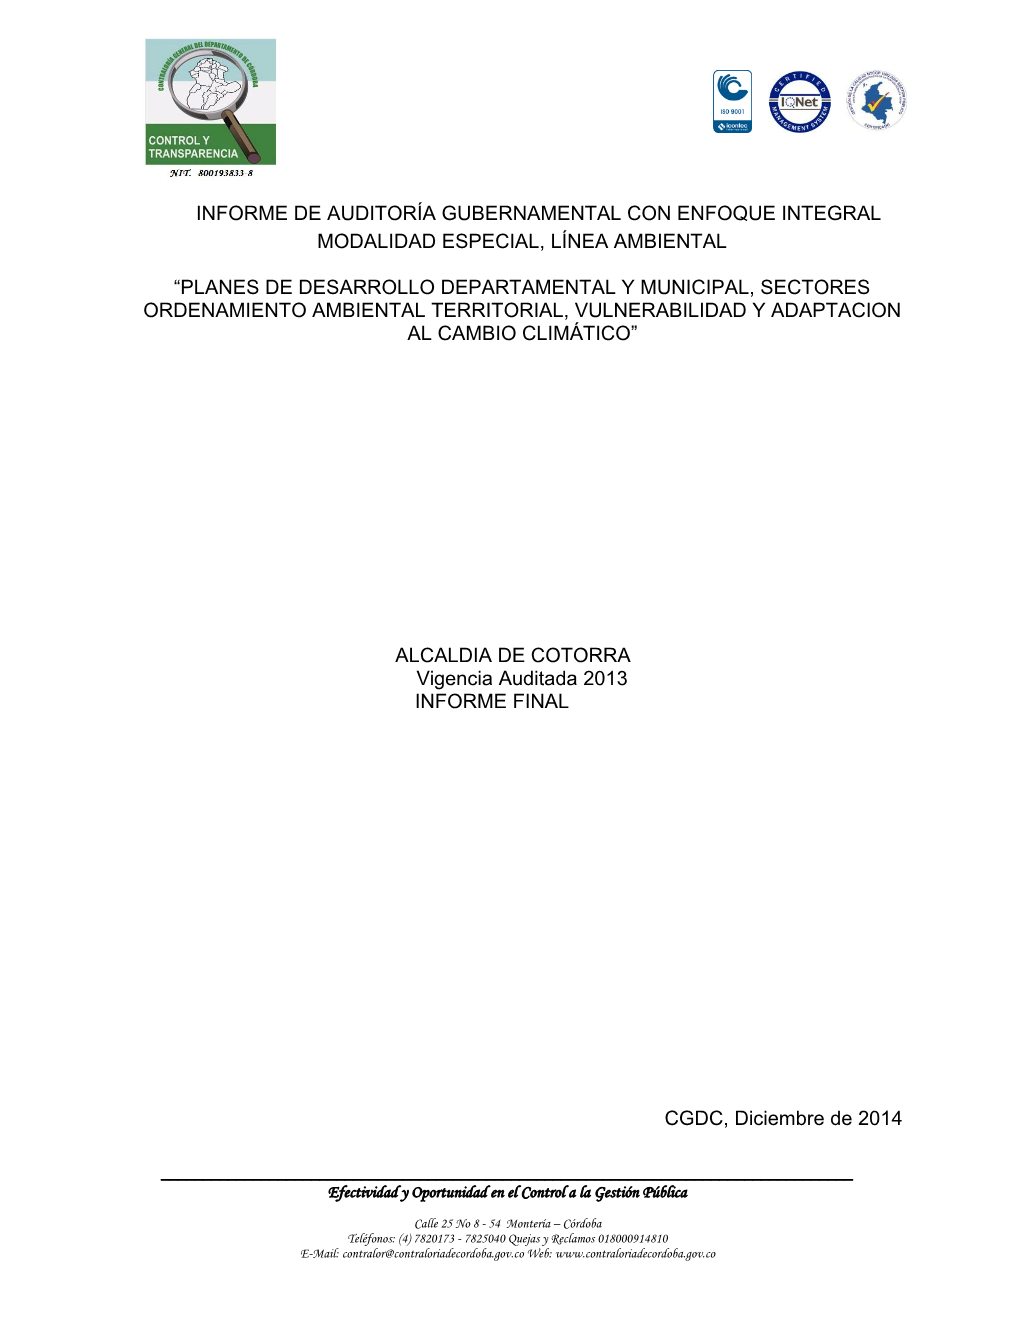 Informe De Auditoría Gubernamental Con Enfoque Integral Modalidad Especial, Línea Ambiental